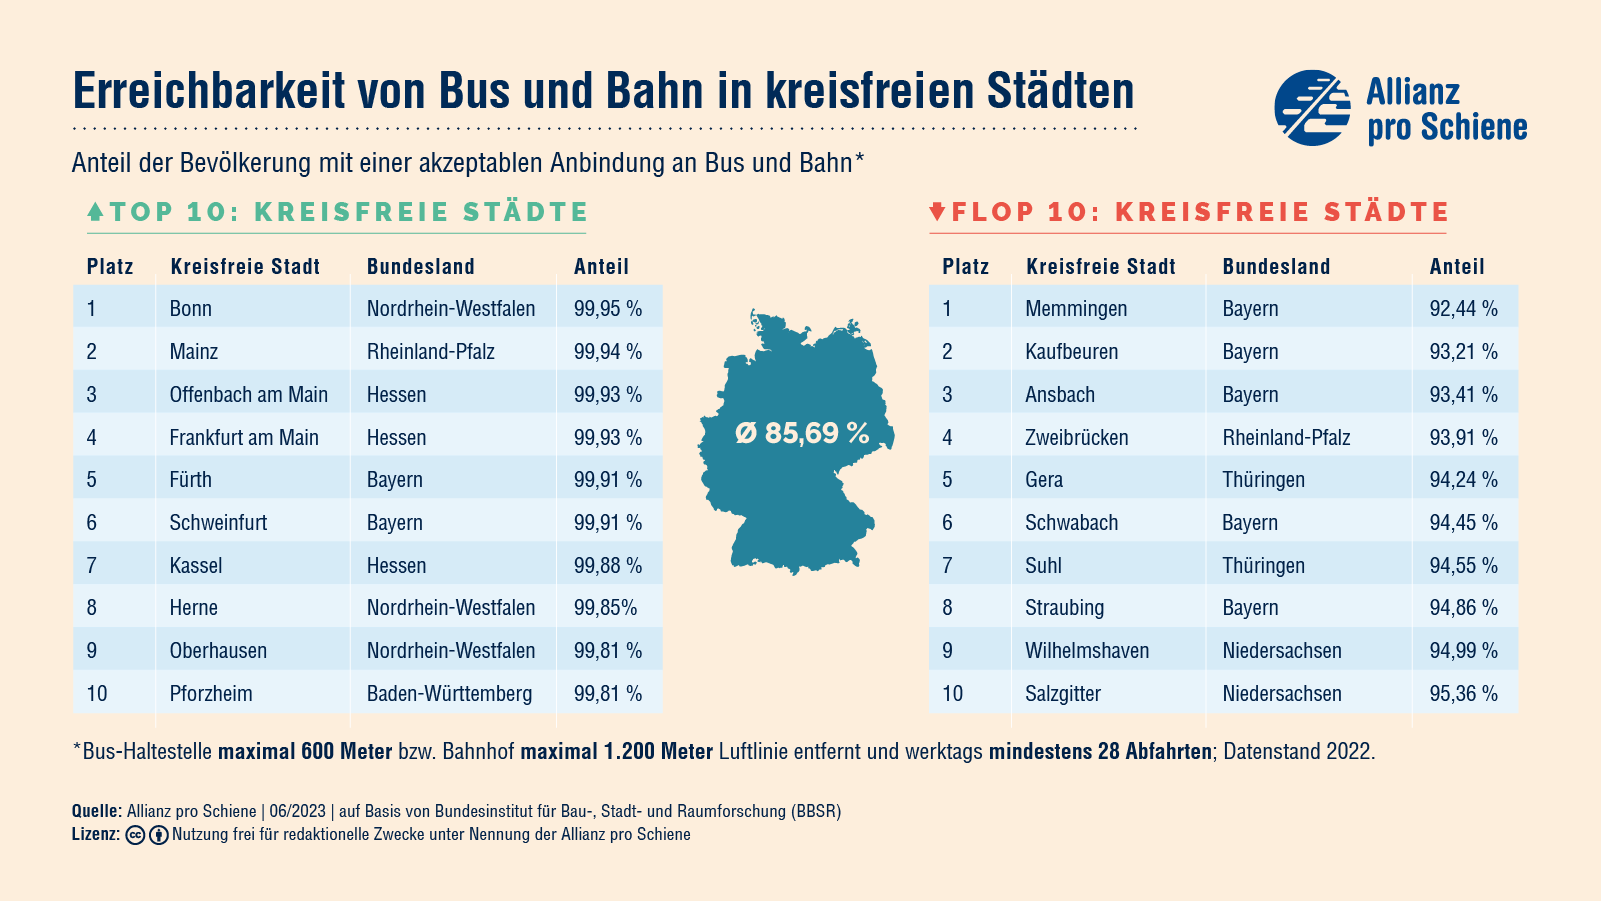 Bonn, Mainz und Offenbach an Main bieten die beste Erreichbarkeit von Bus und Bahn in Städten. Memmingen, Kaufbeuren und Ansbach die vergleichsweise schlechteste.